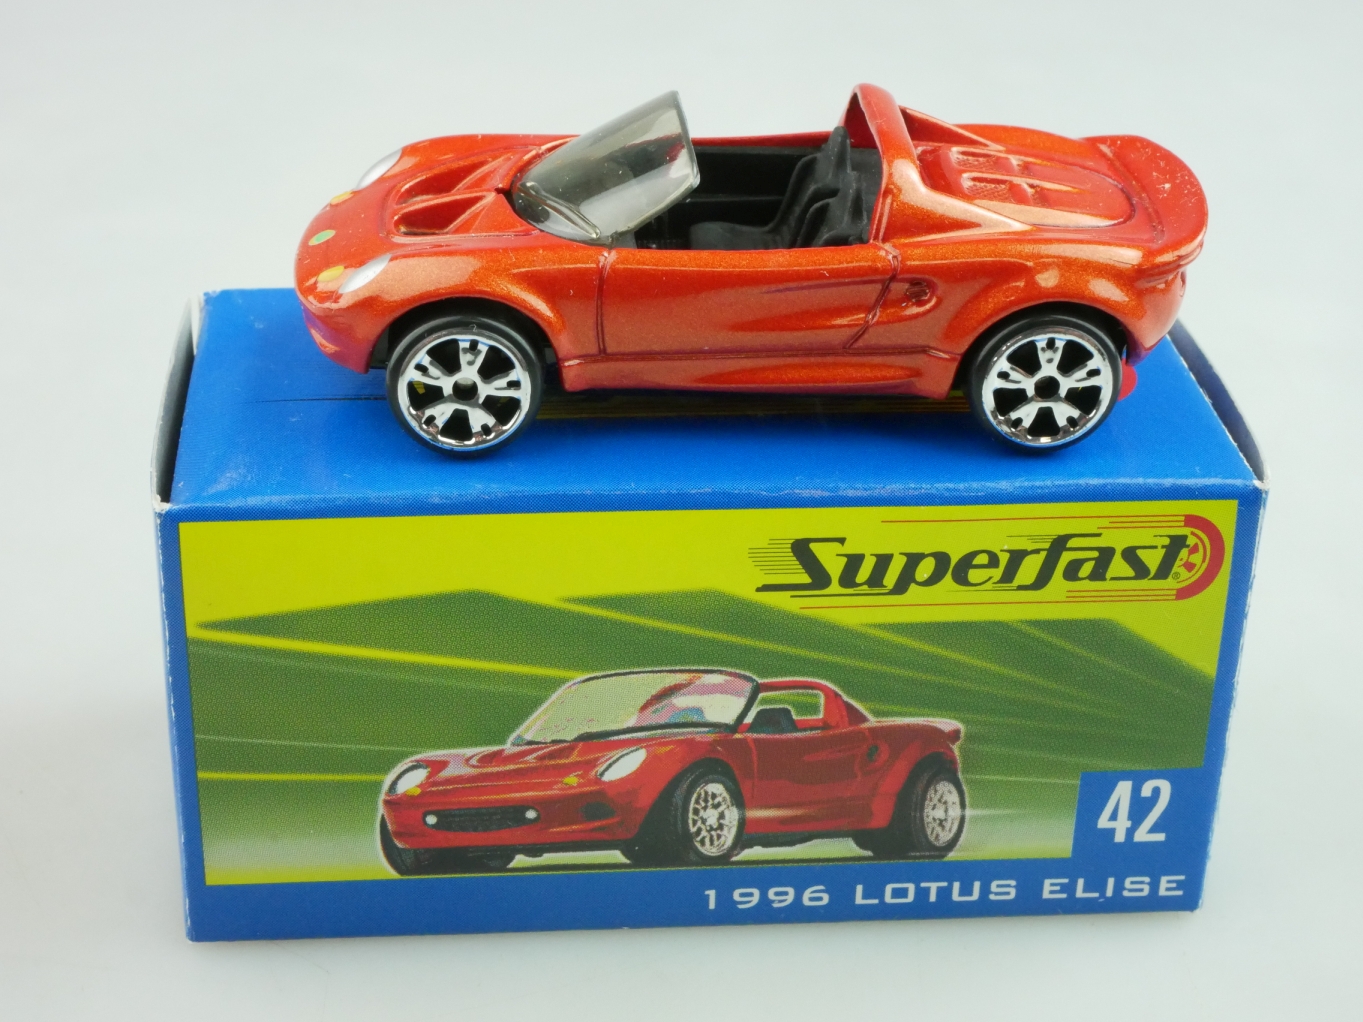 42 1996 Lotus Elise - 10496